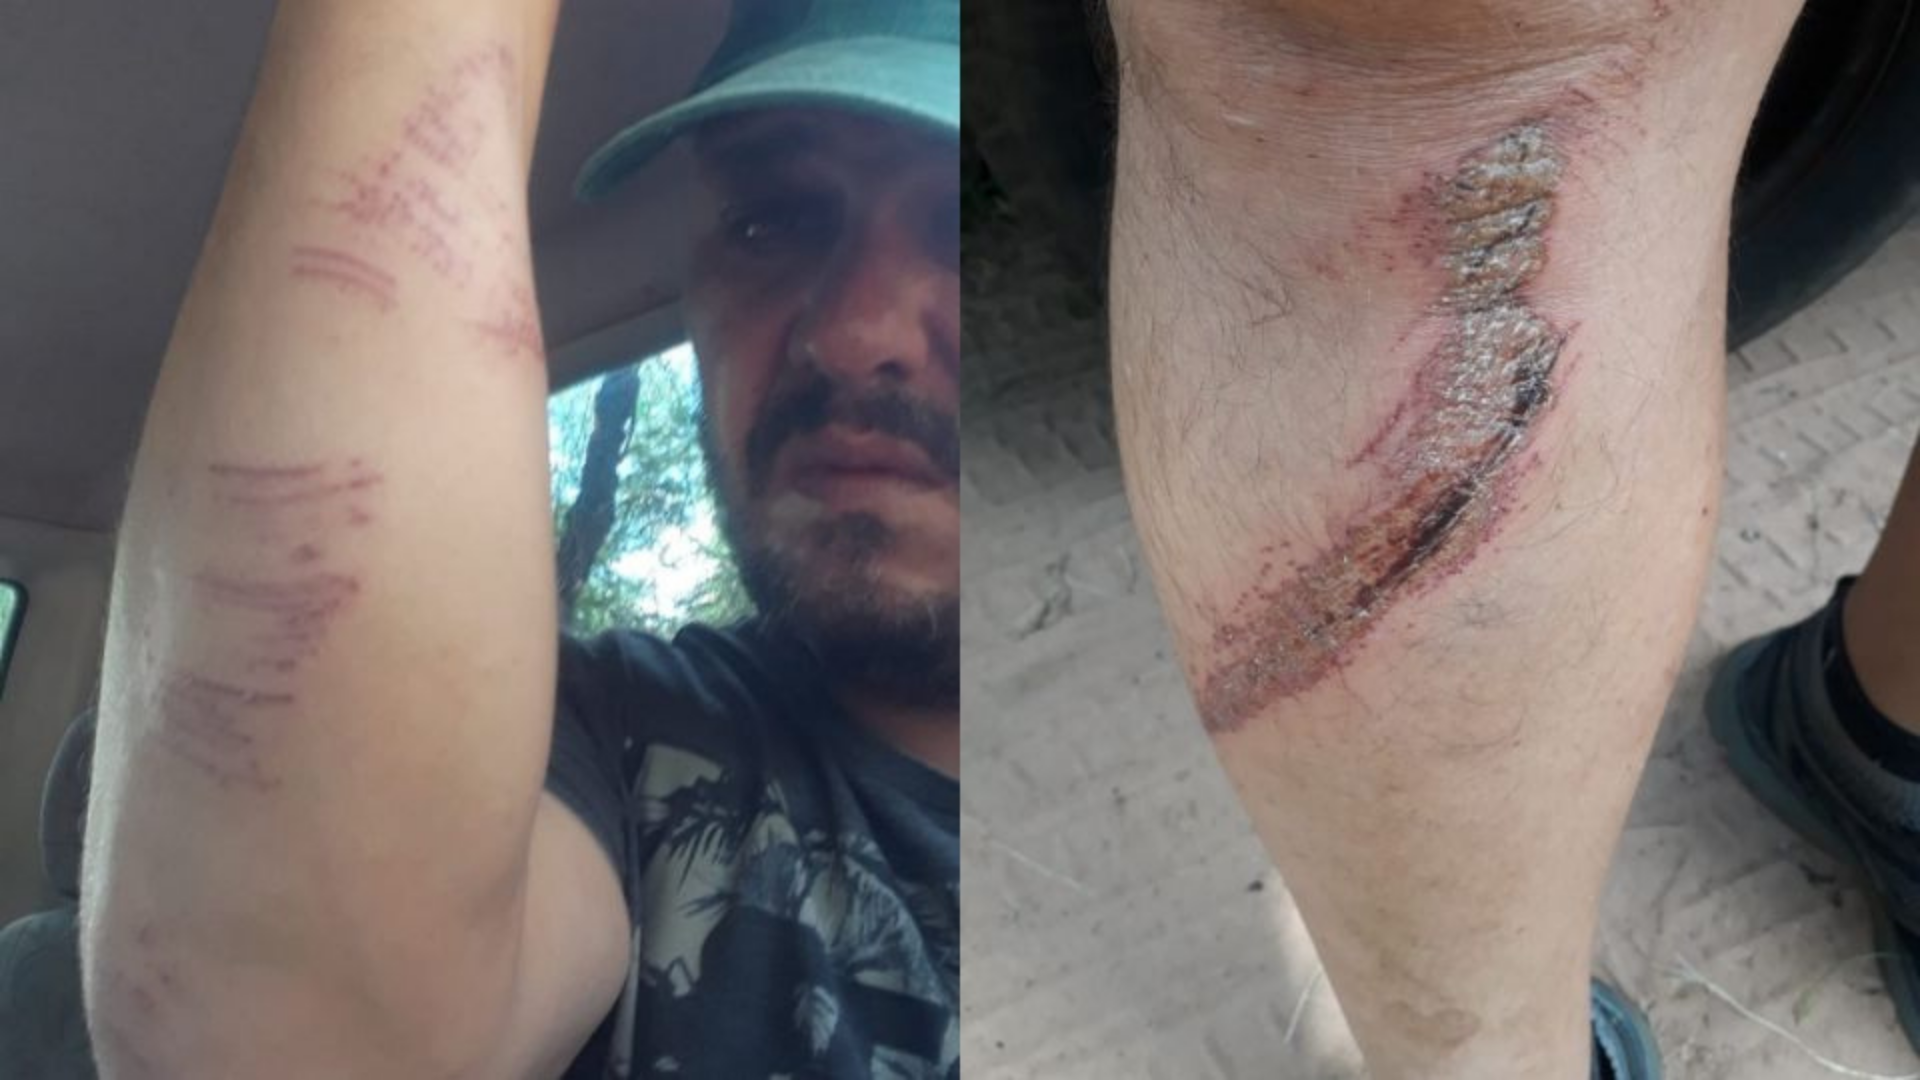 Com camisa de Lula, homem é espancado por bolsonaristas. Foto de hematomas no braço e na perna do homem agredido.